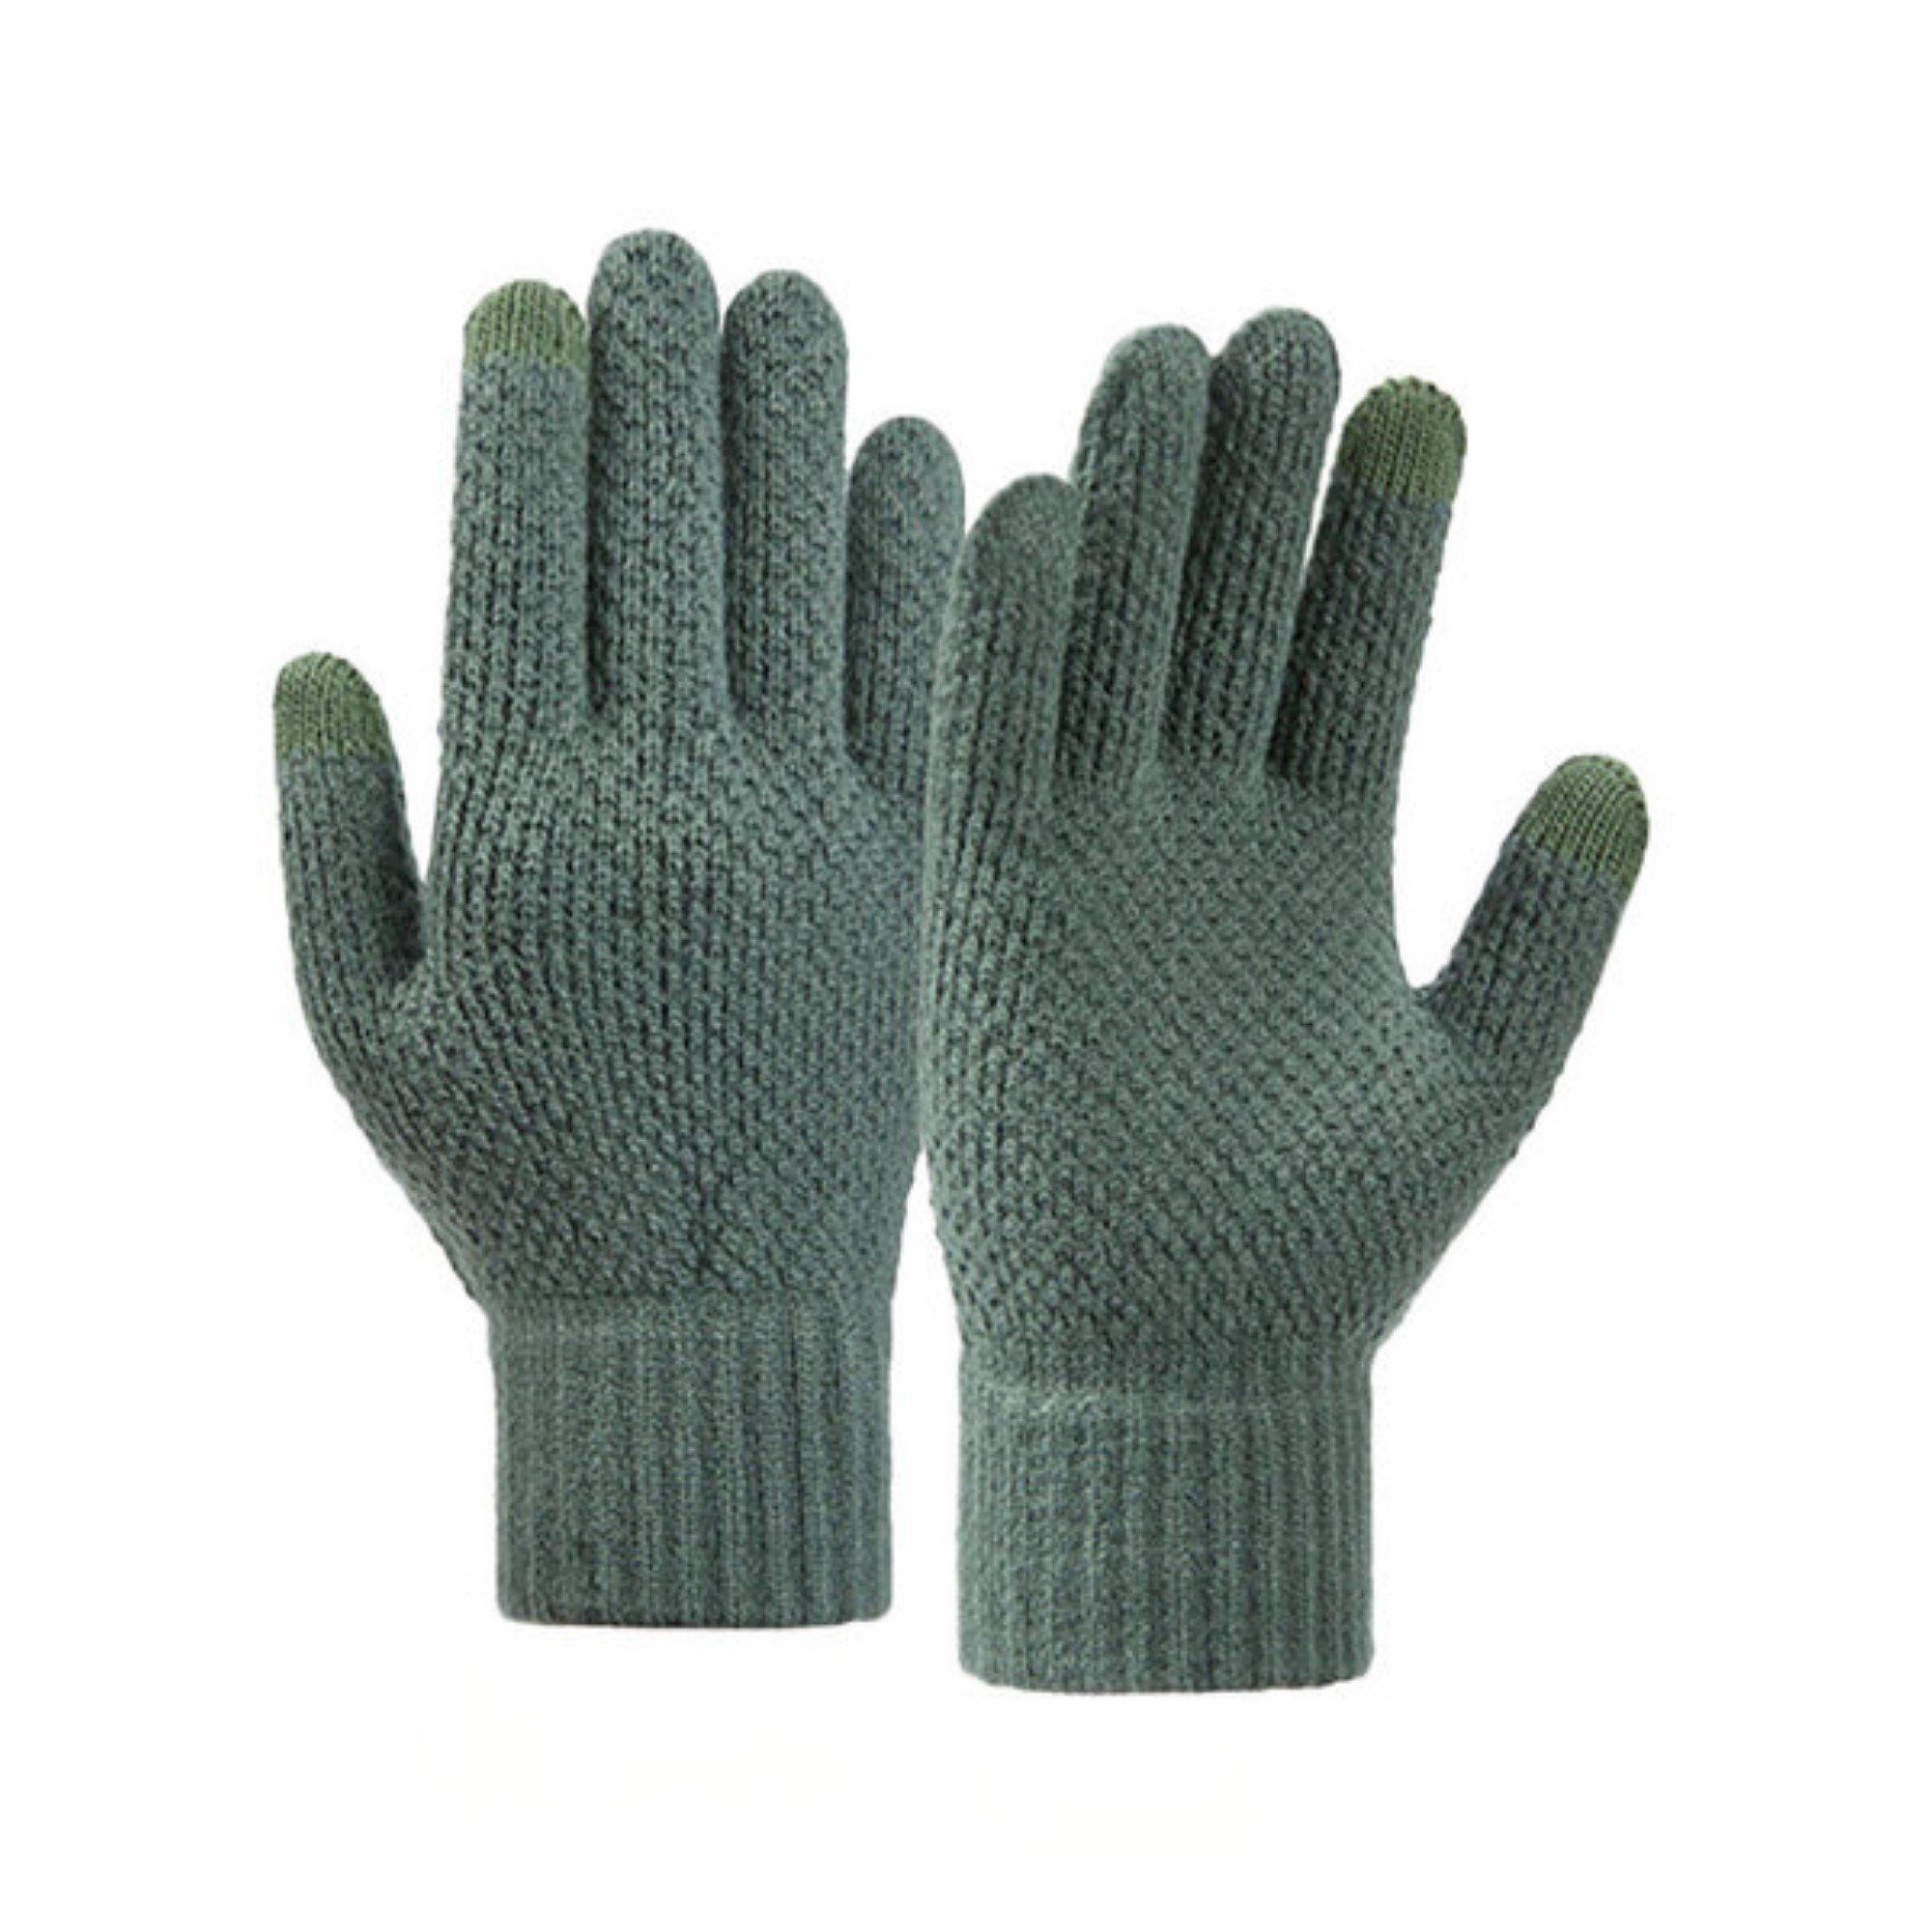 COFI 1453 Fäustlinge Winterliche geflochtene Handyhandschuhe Handwärmer Grün